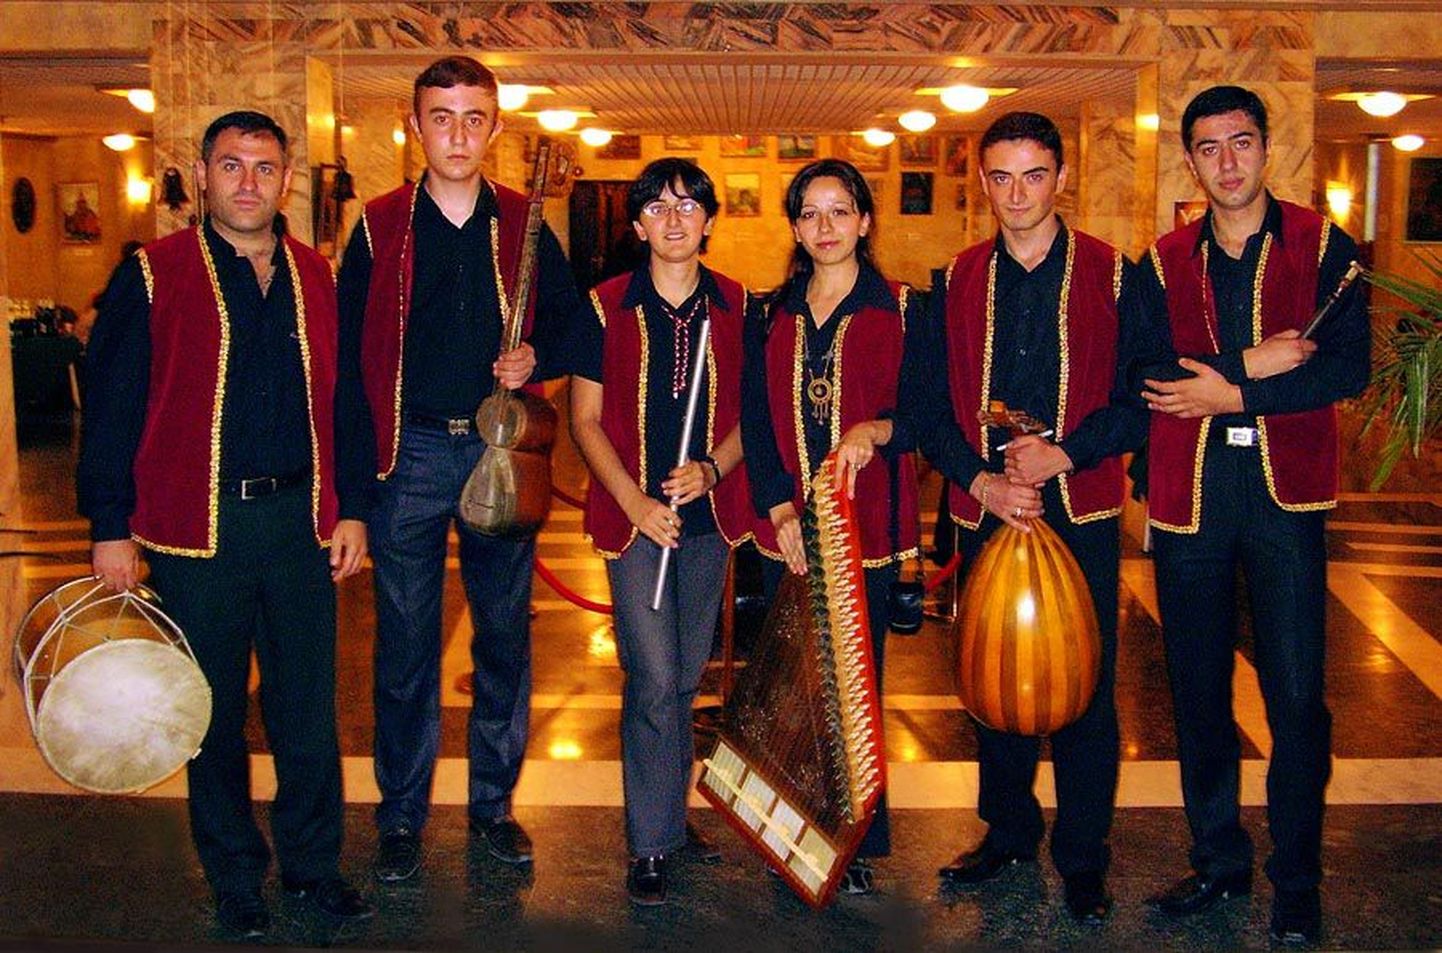 Noored ja tegusad armeenlased peavad kalliks esivanemate muusikalist pärandit ning traditsioone.